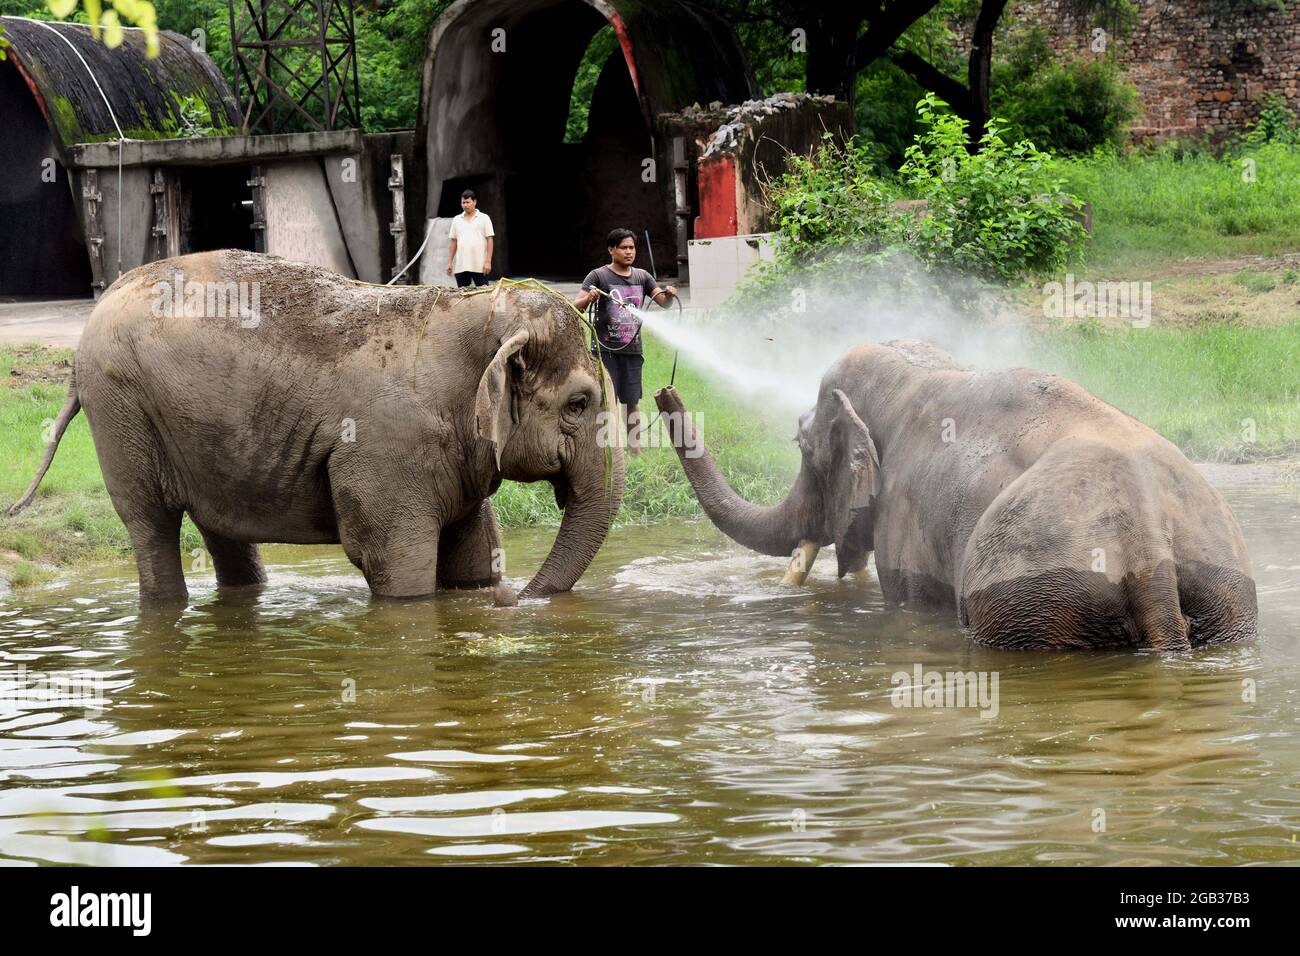 New Delhi. 1er août 2021. Photo prise le 1er août 2021 montre des éléphants au zoo de Delhi en Inde. Le zoo de Delhi a rouvert ses portes au public et a fourni un service de réservation de billets en ligne aux visiteurs. Credit: Partha Sarkar/Xinhua/Alamy Live News Banque D'Images